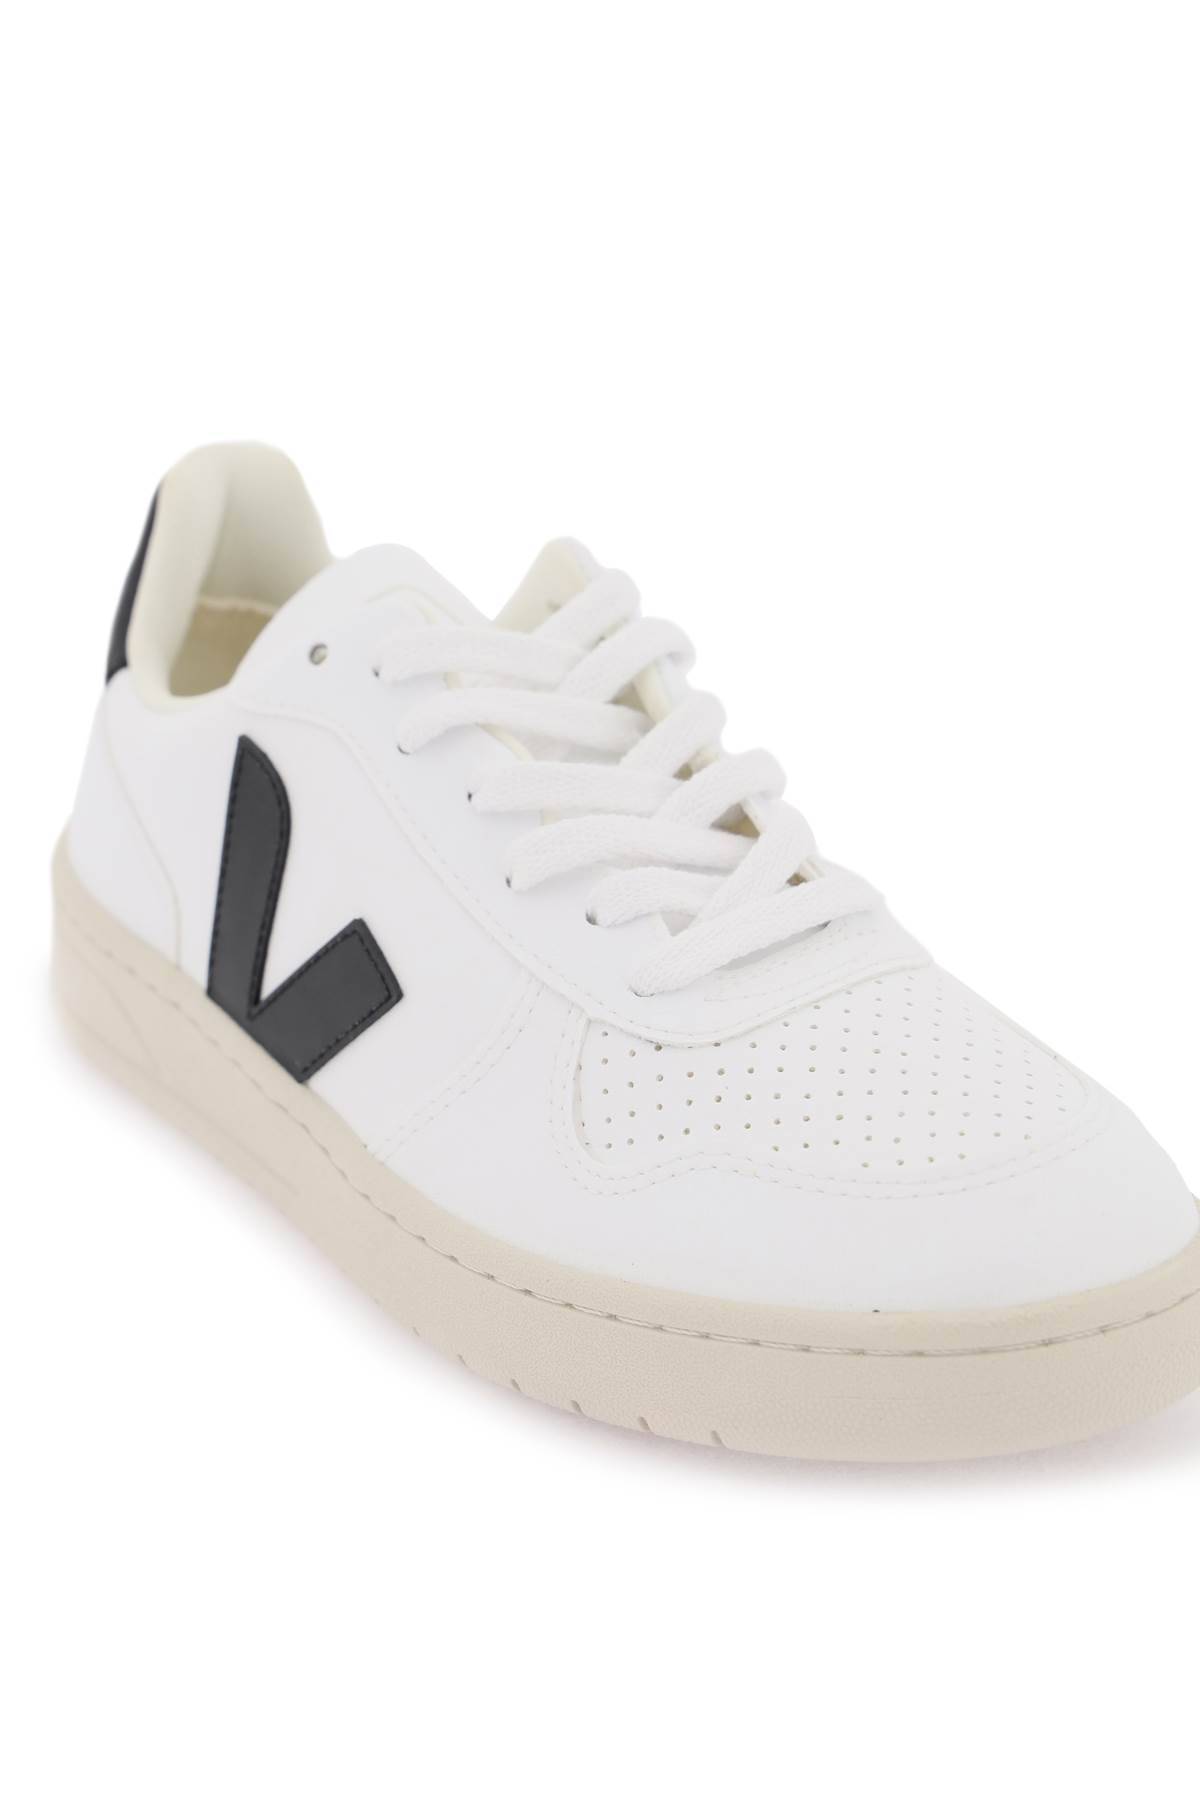 Shop Veja V-10 Leather Sneakers In White,black